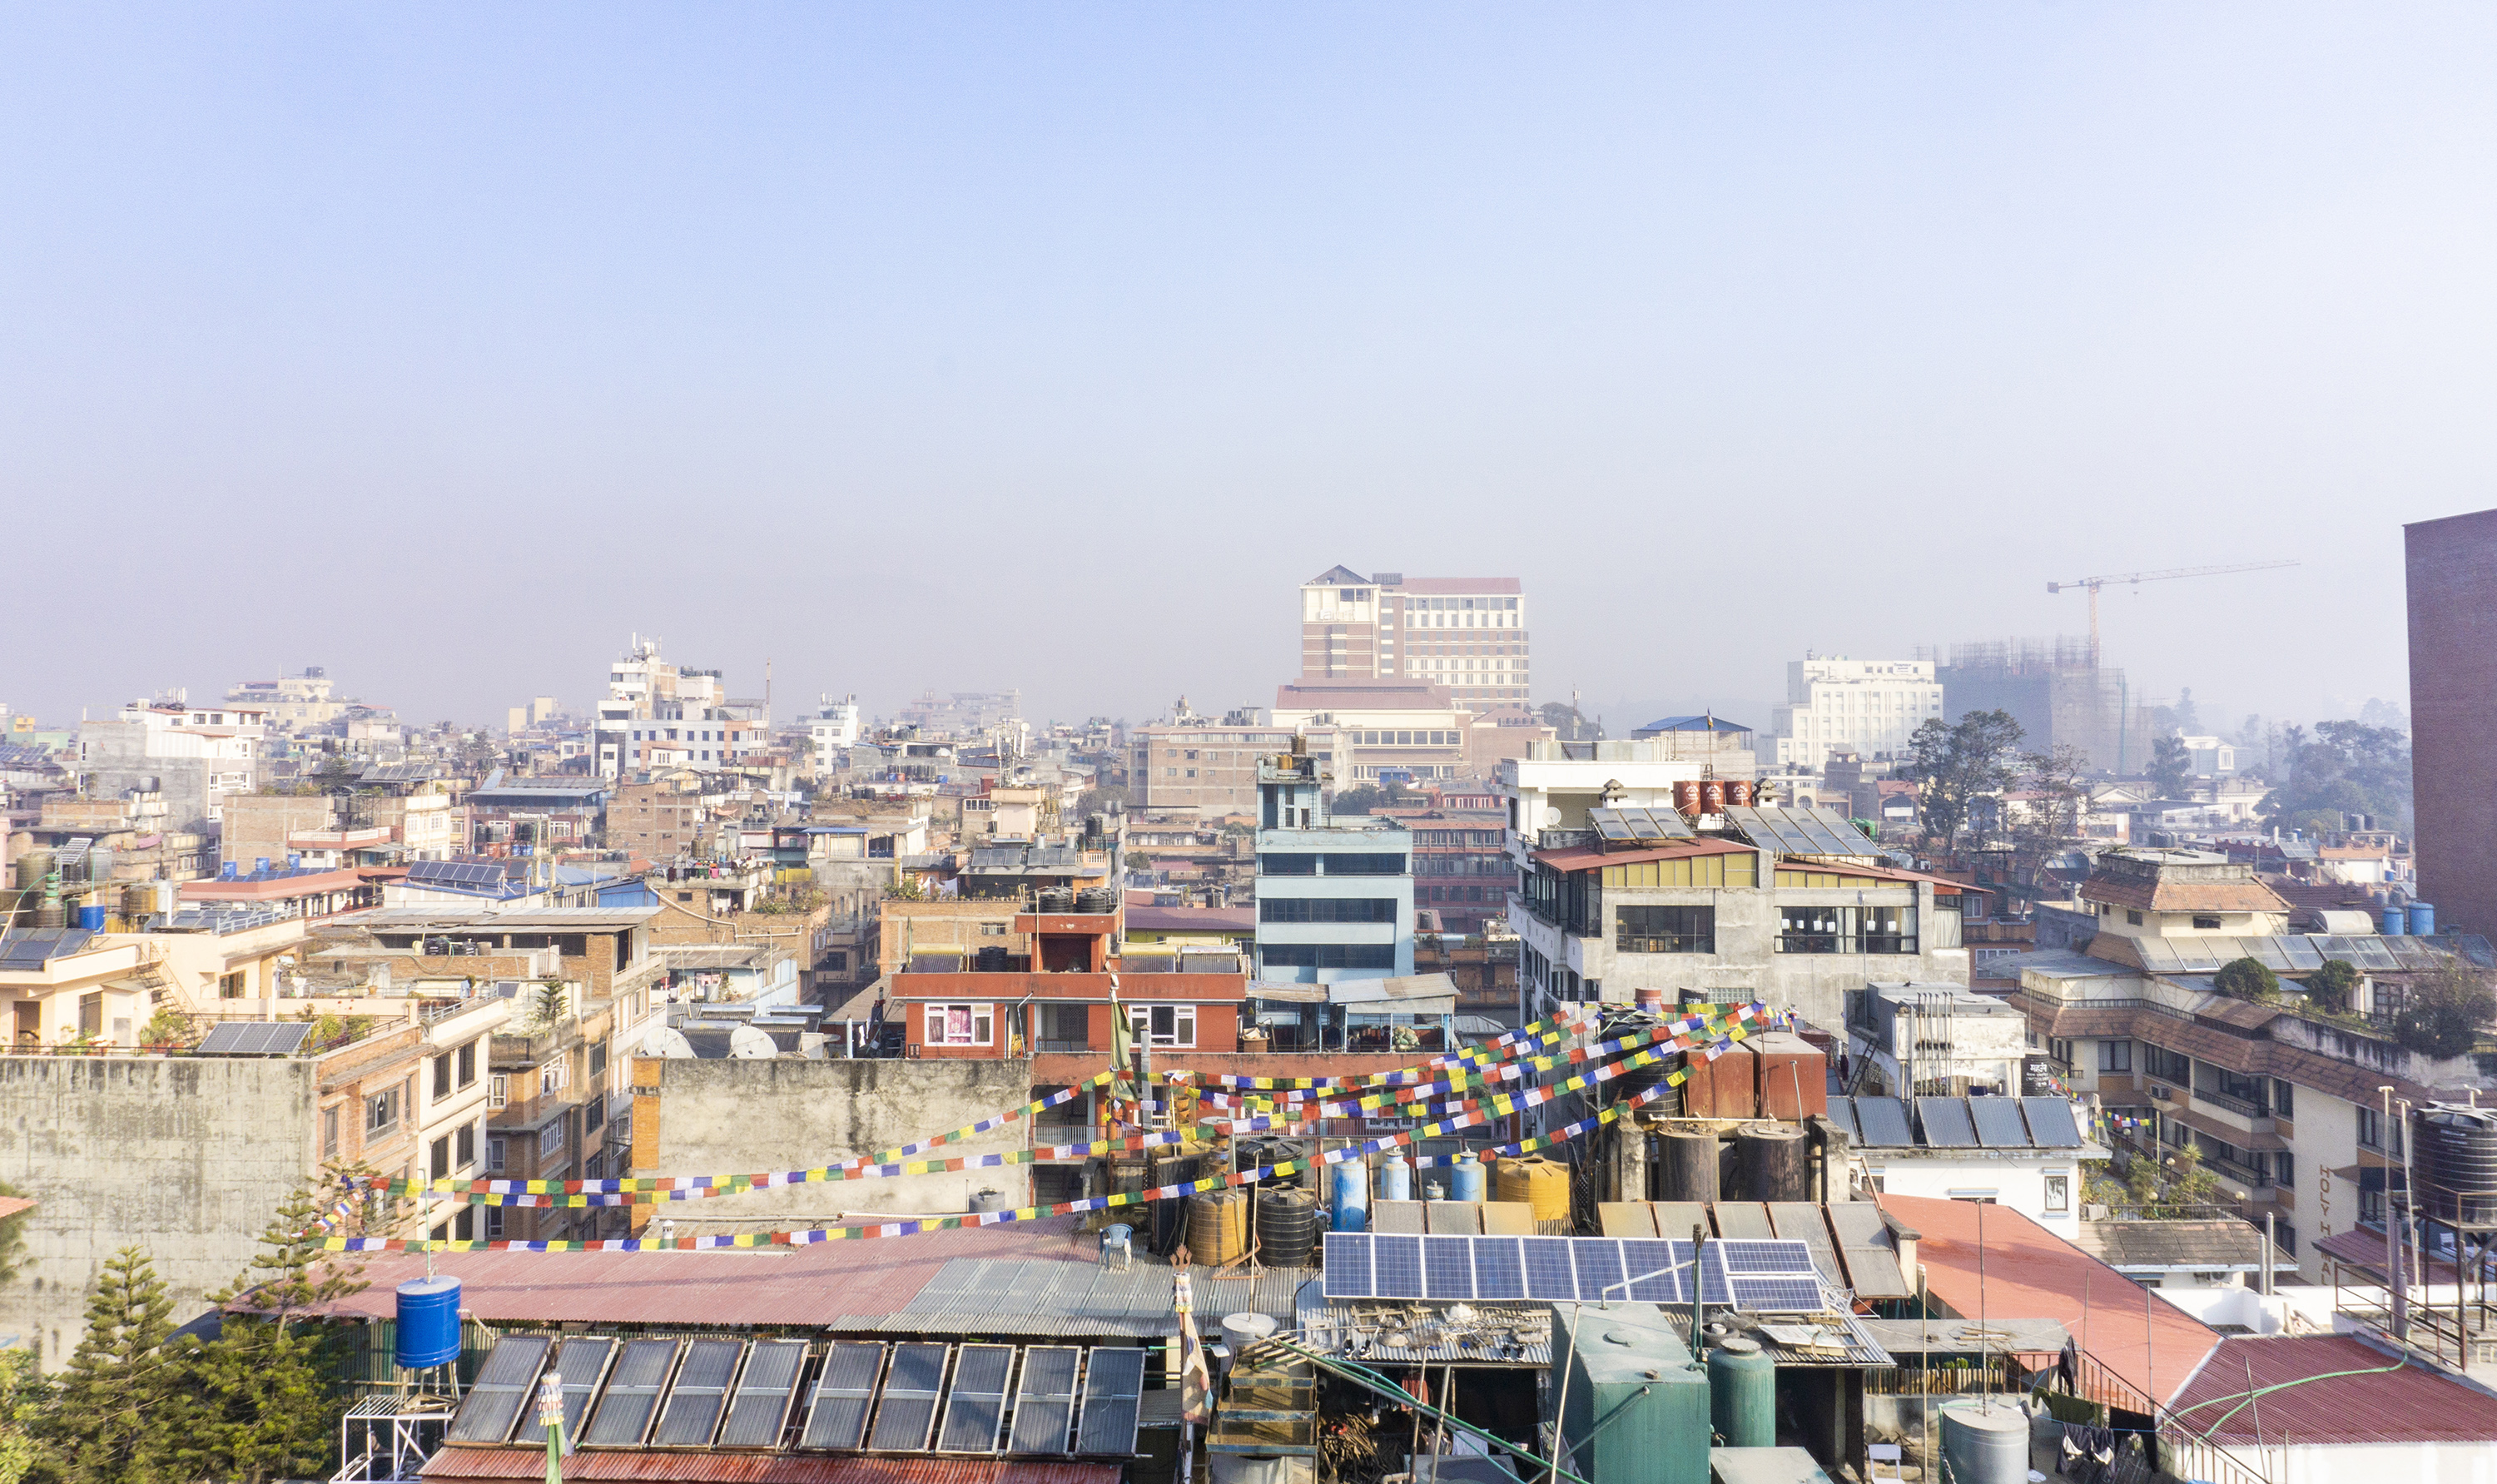 尼泊尔最大的城市,市区几乎没有什么高楼,还不如国内普通县城